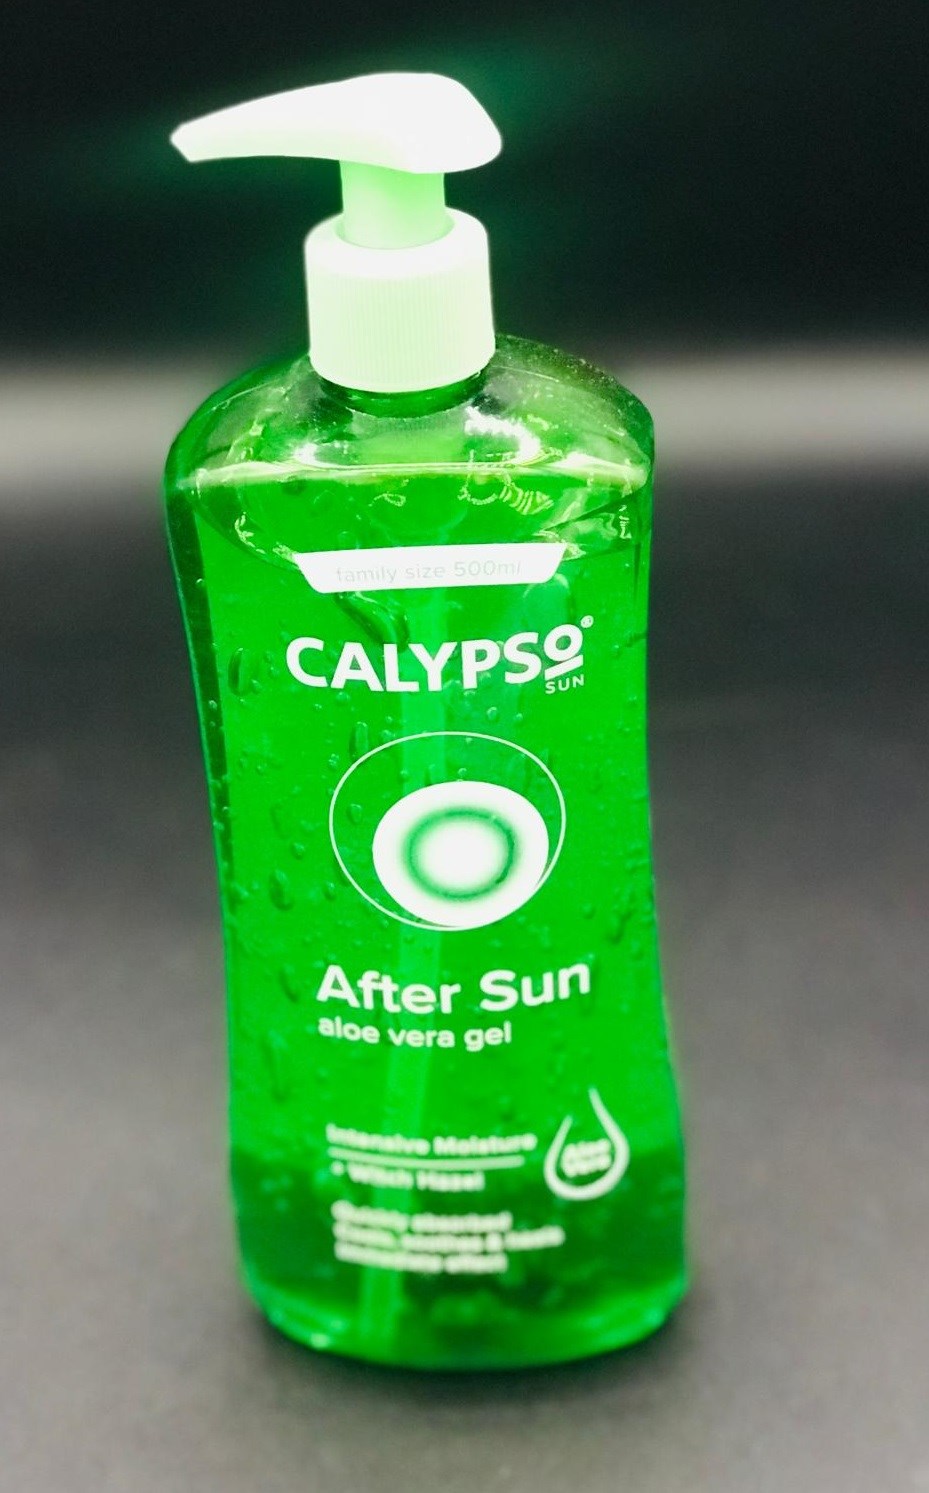 Calypso After Sun Aloe Vera Gel £3.49